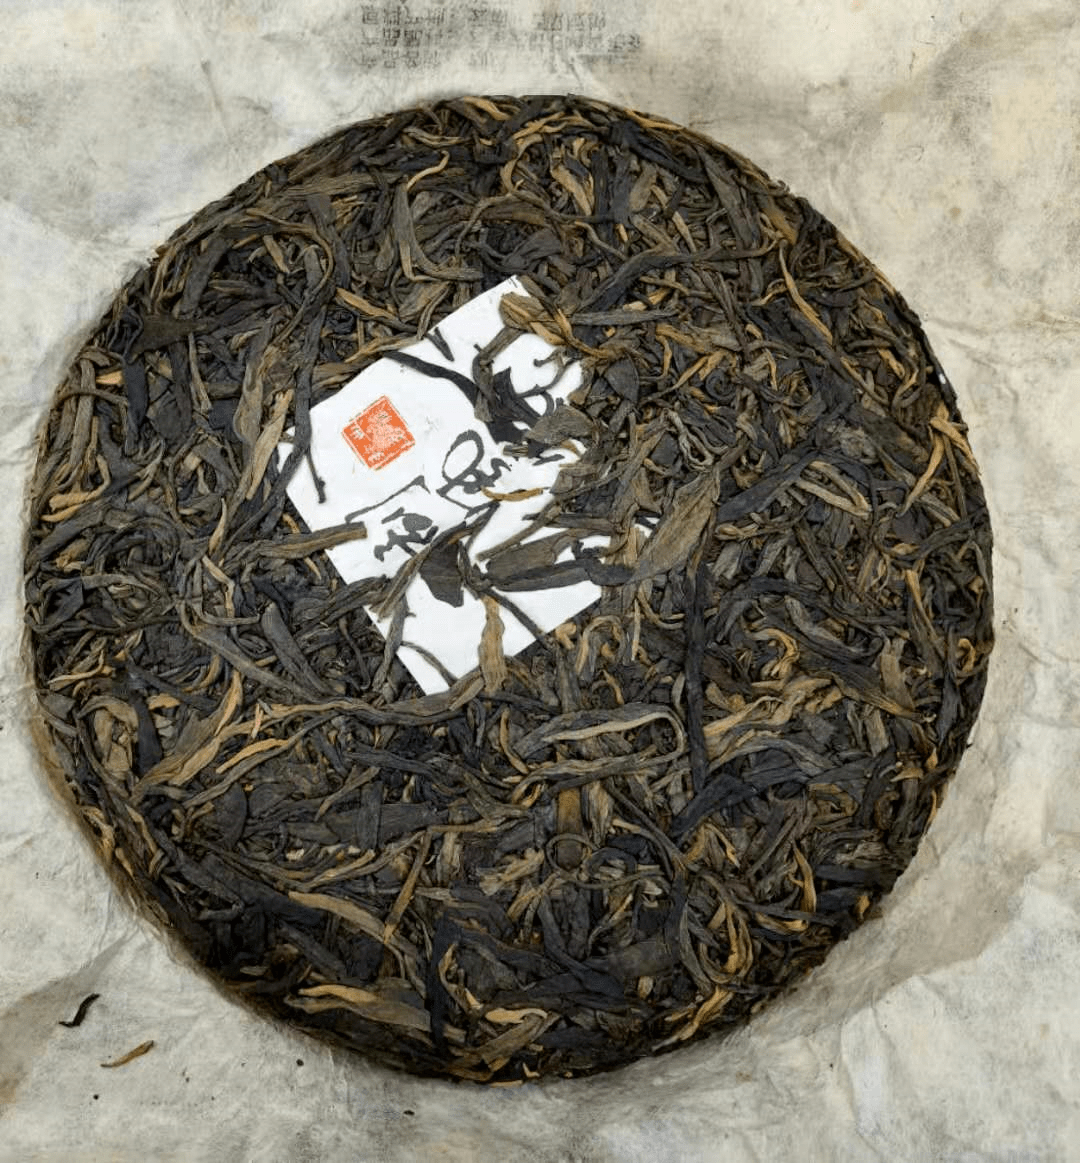 广东仓的普洱茶能买吗